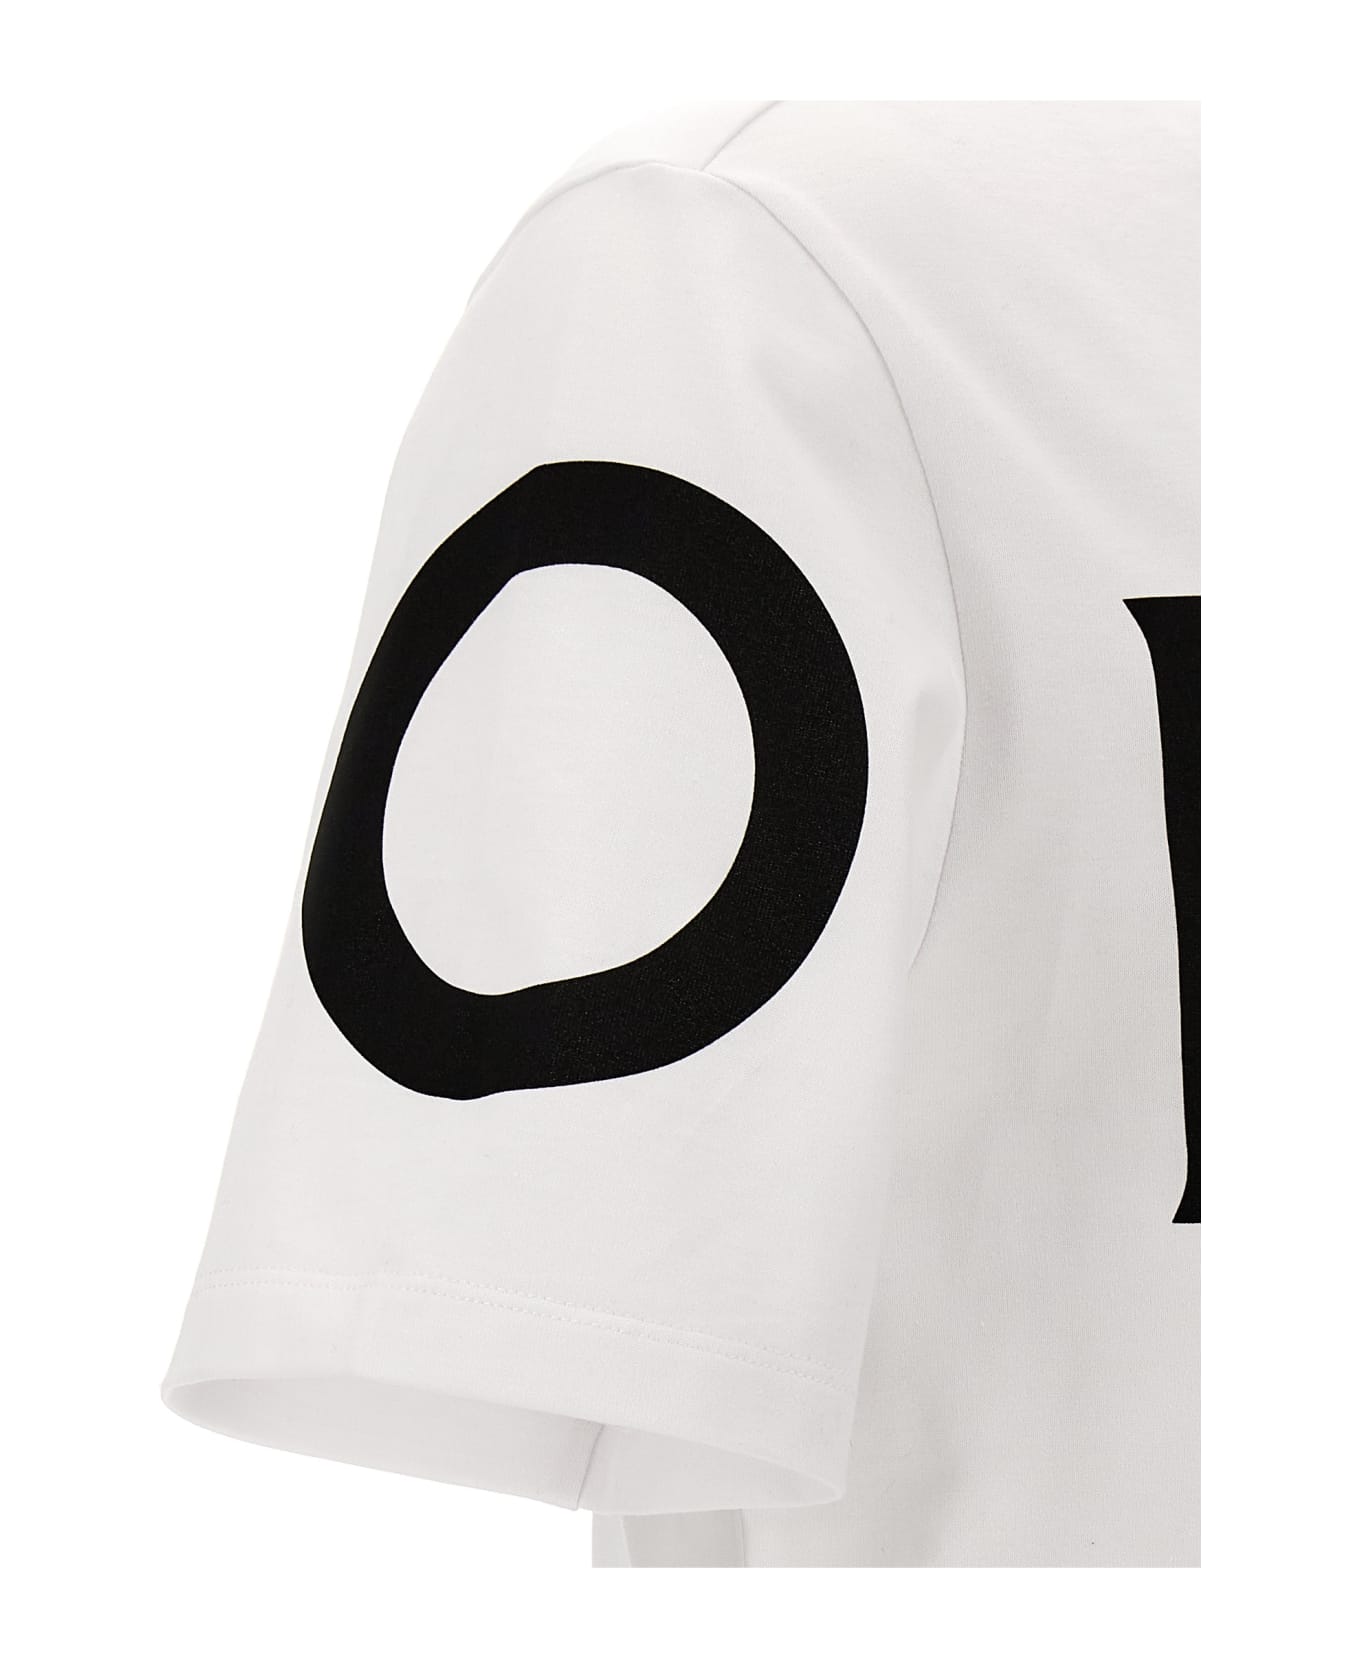 Ferragamo Logo Print T-shirt - White/Black